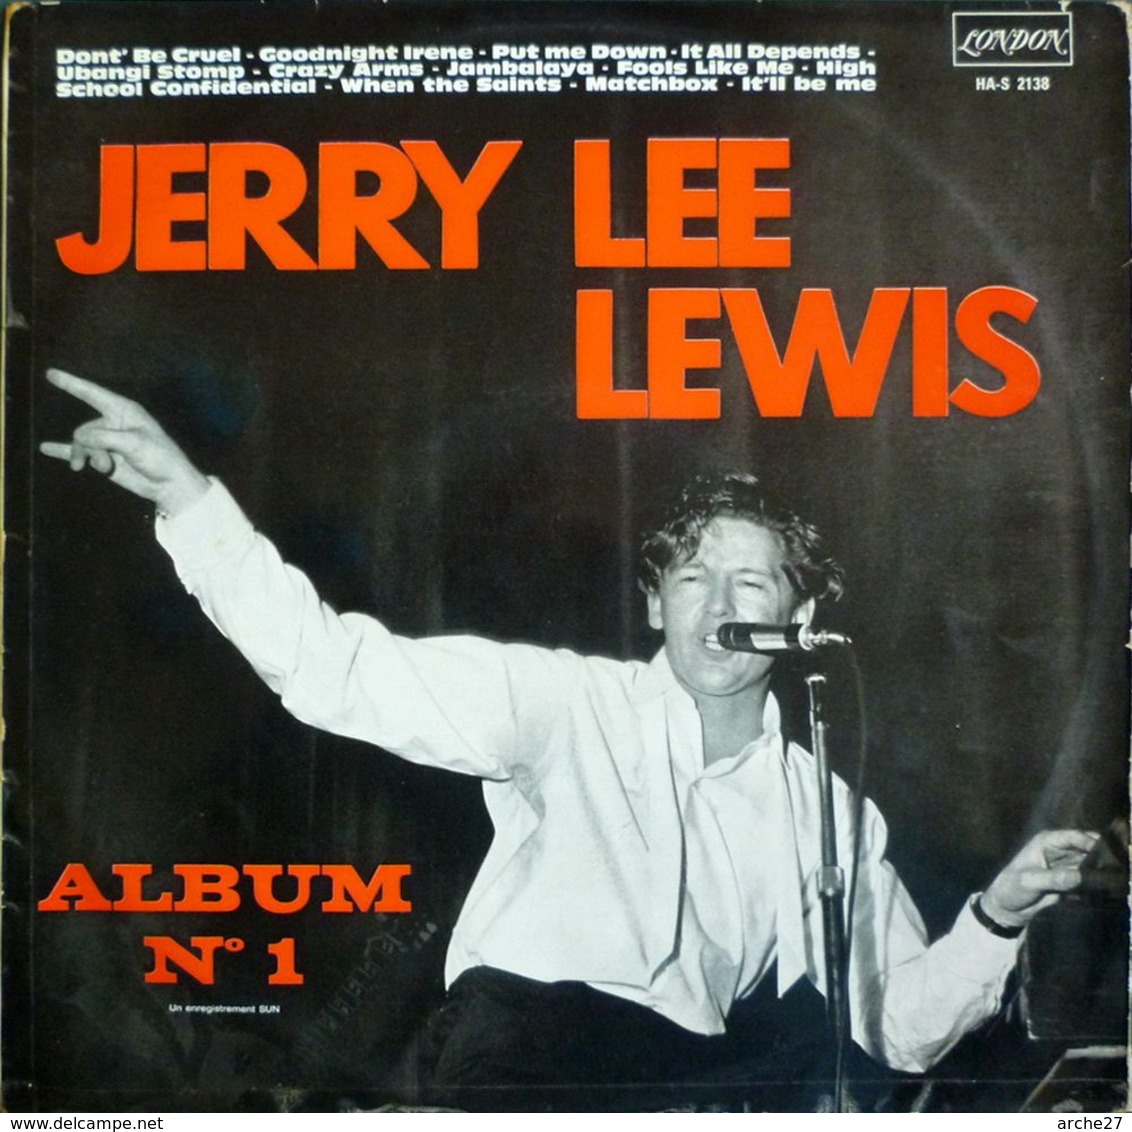 JERRY LEE LEWIS - LP - 33T - Disque Vinyle - Album N°1 - HA.S 2138 - Rock